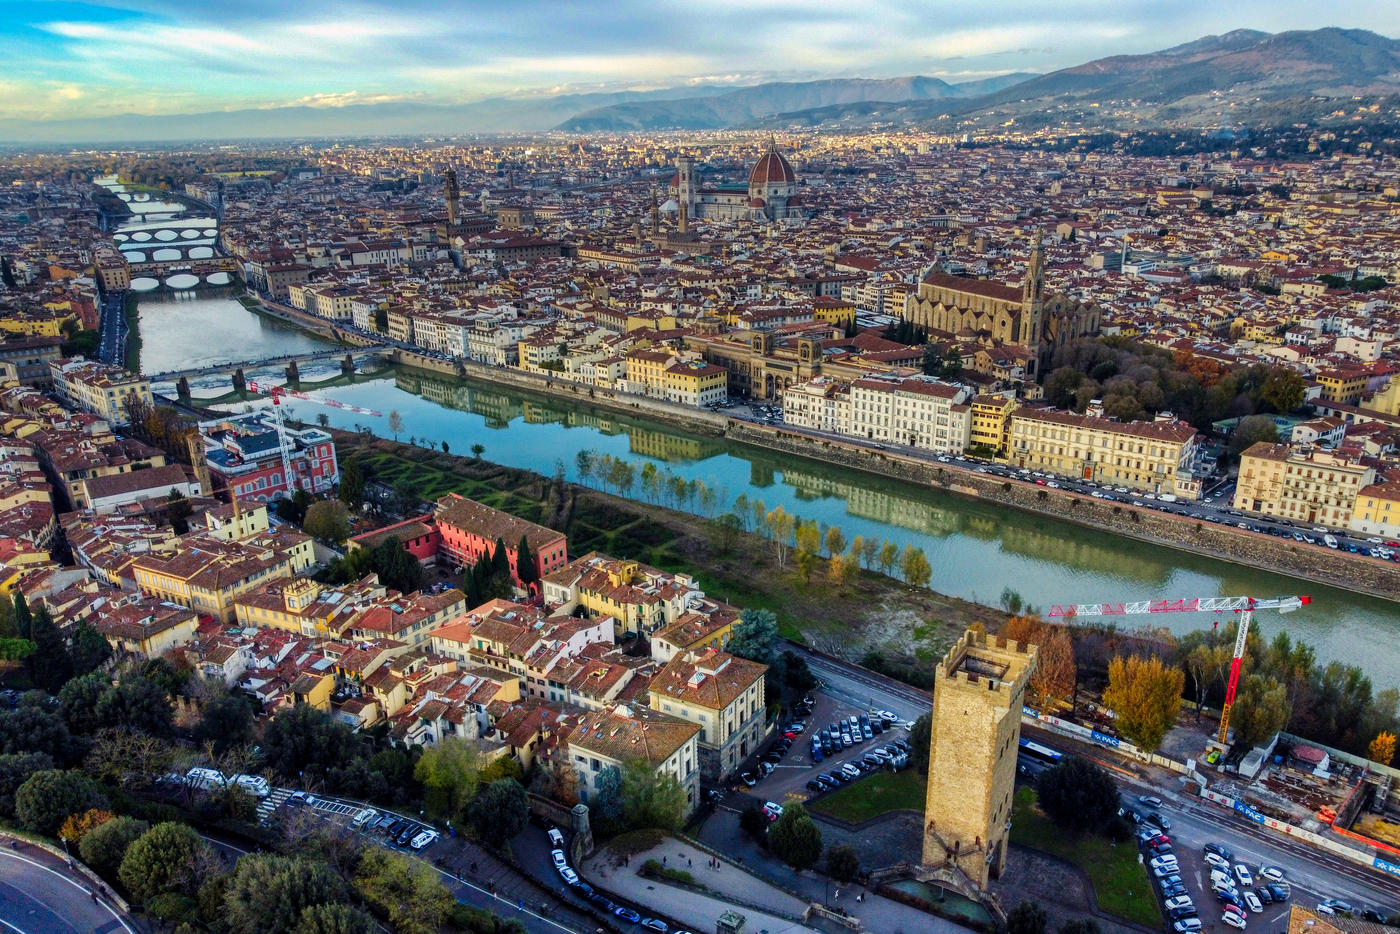 Florence: A Renaissance Dream